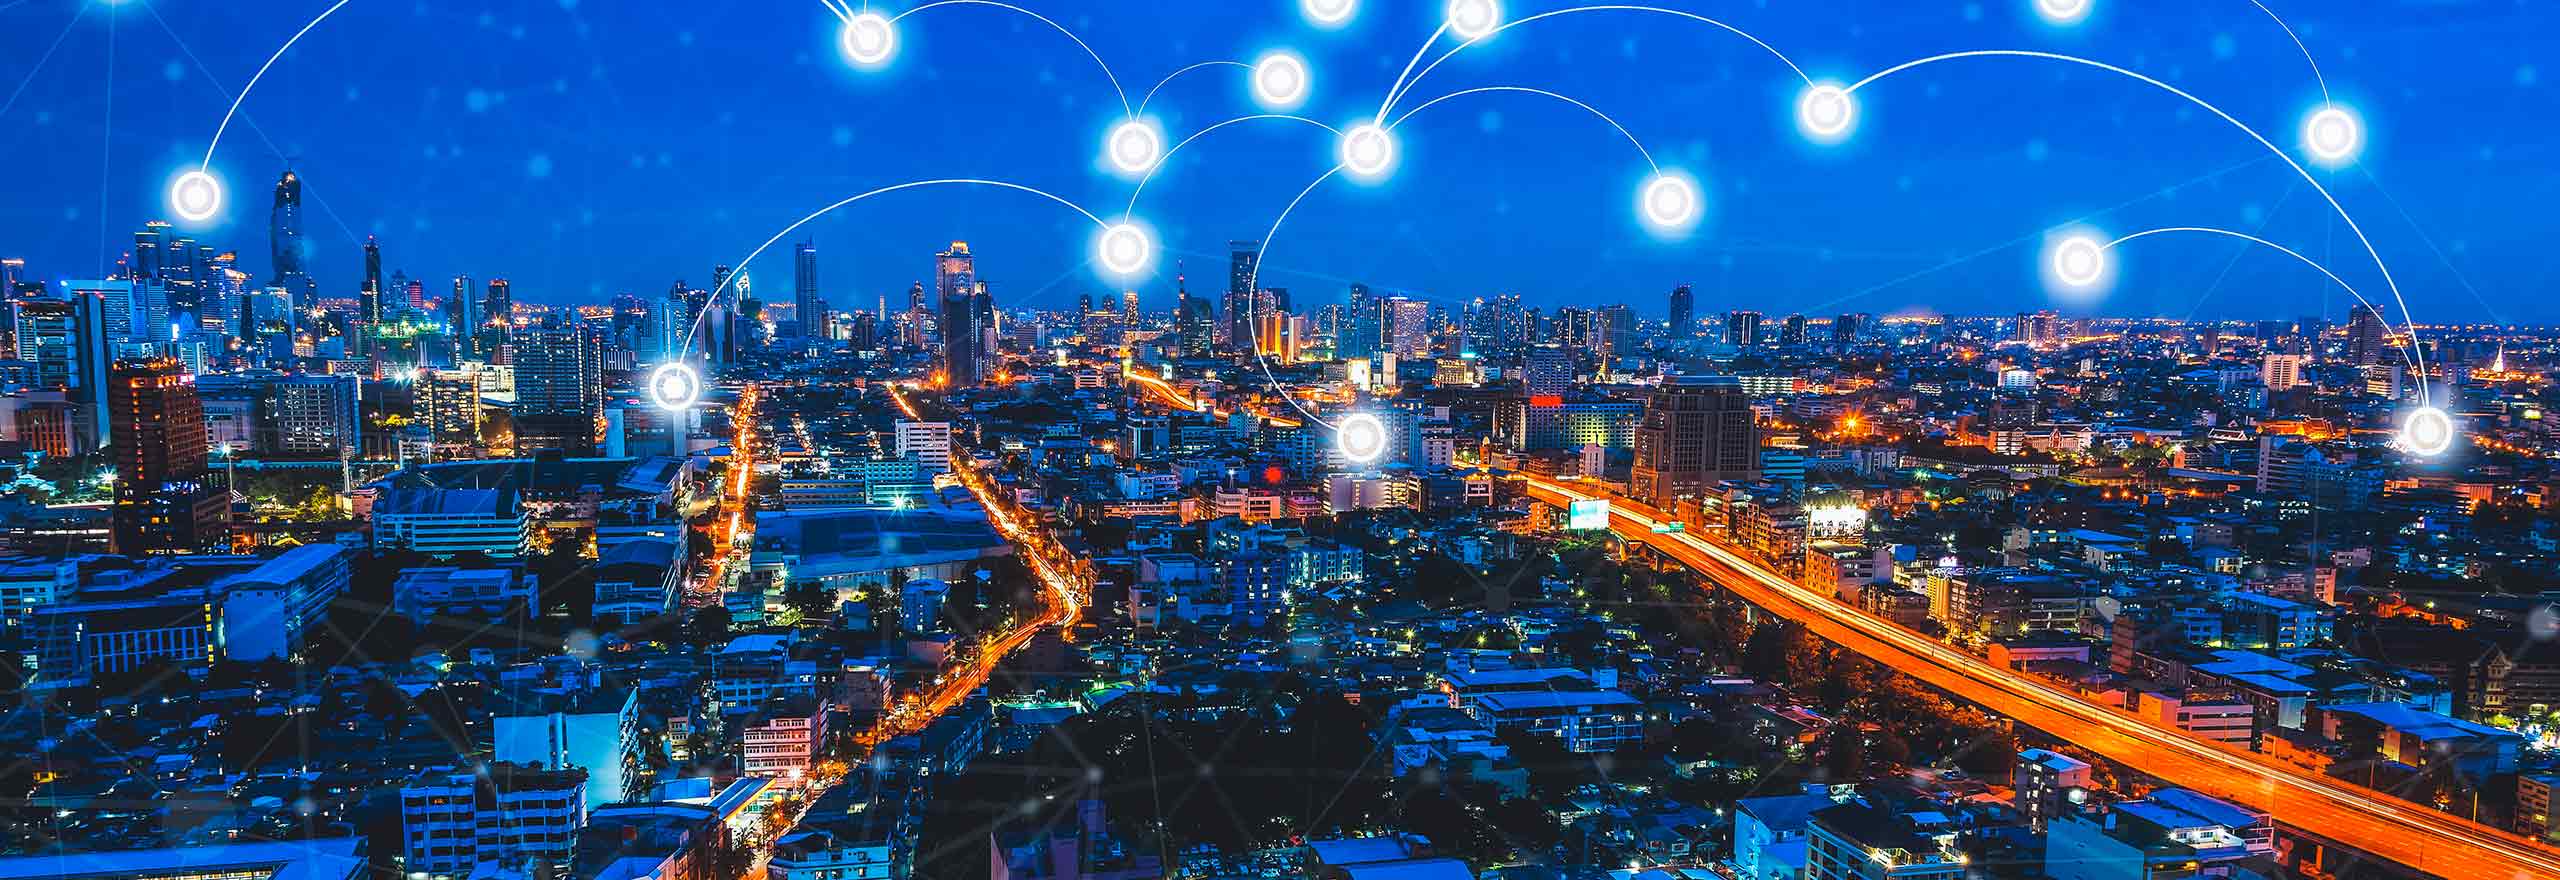 Tecnologia de conexão em cidade inteligente